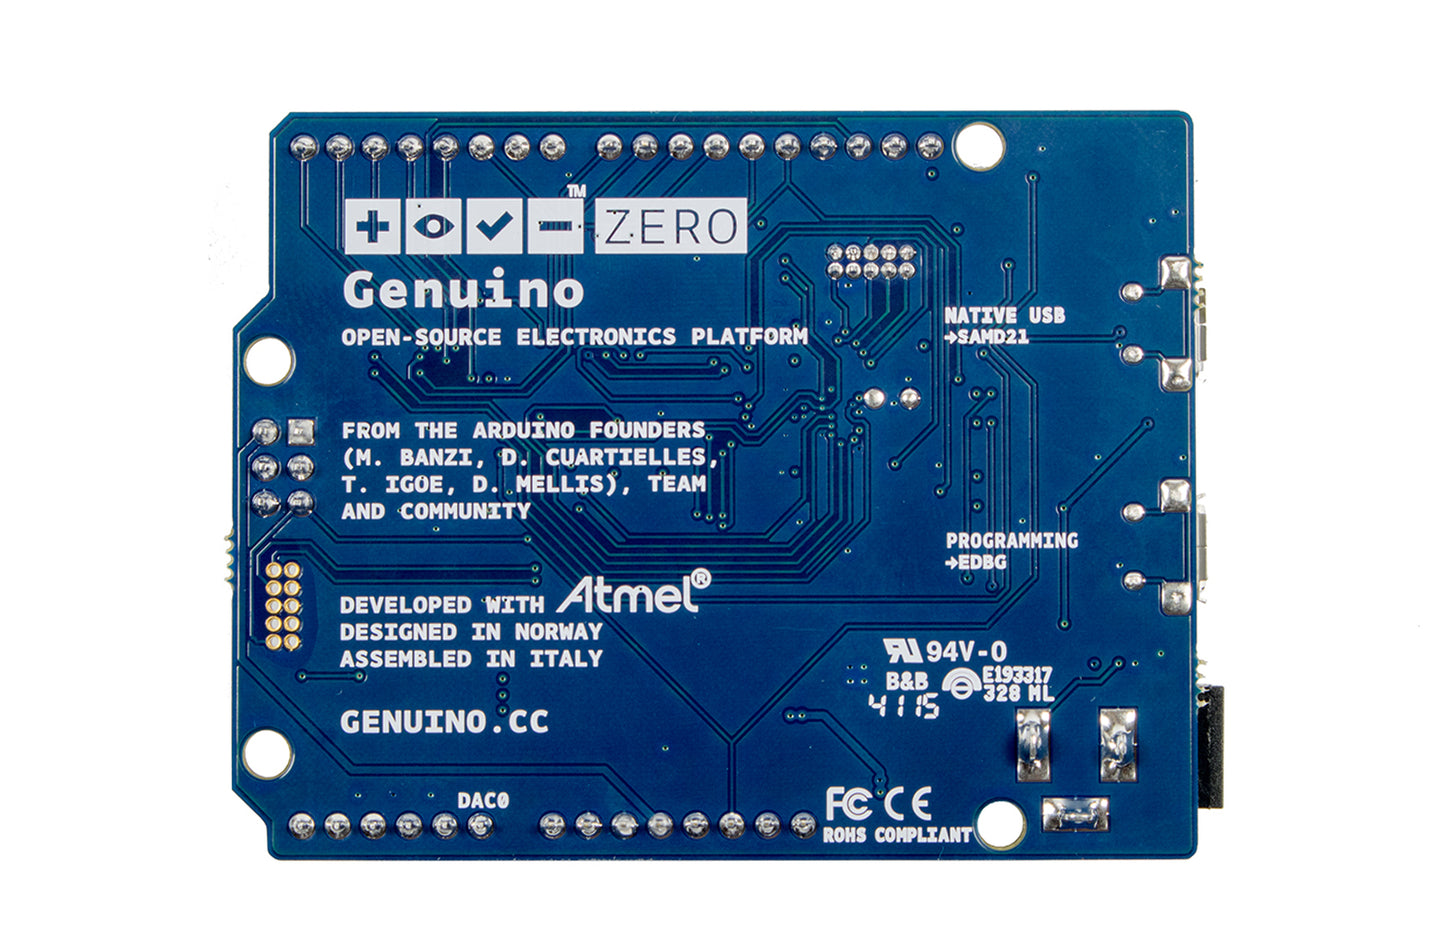 Genuino Zero Entwicklungsboard, 32-Bit ARM Cortex M0+